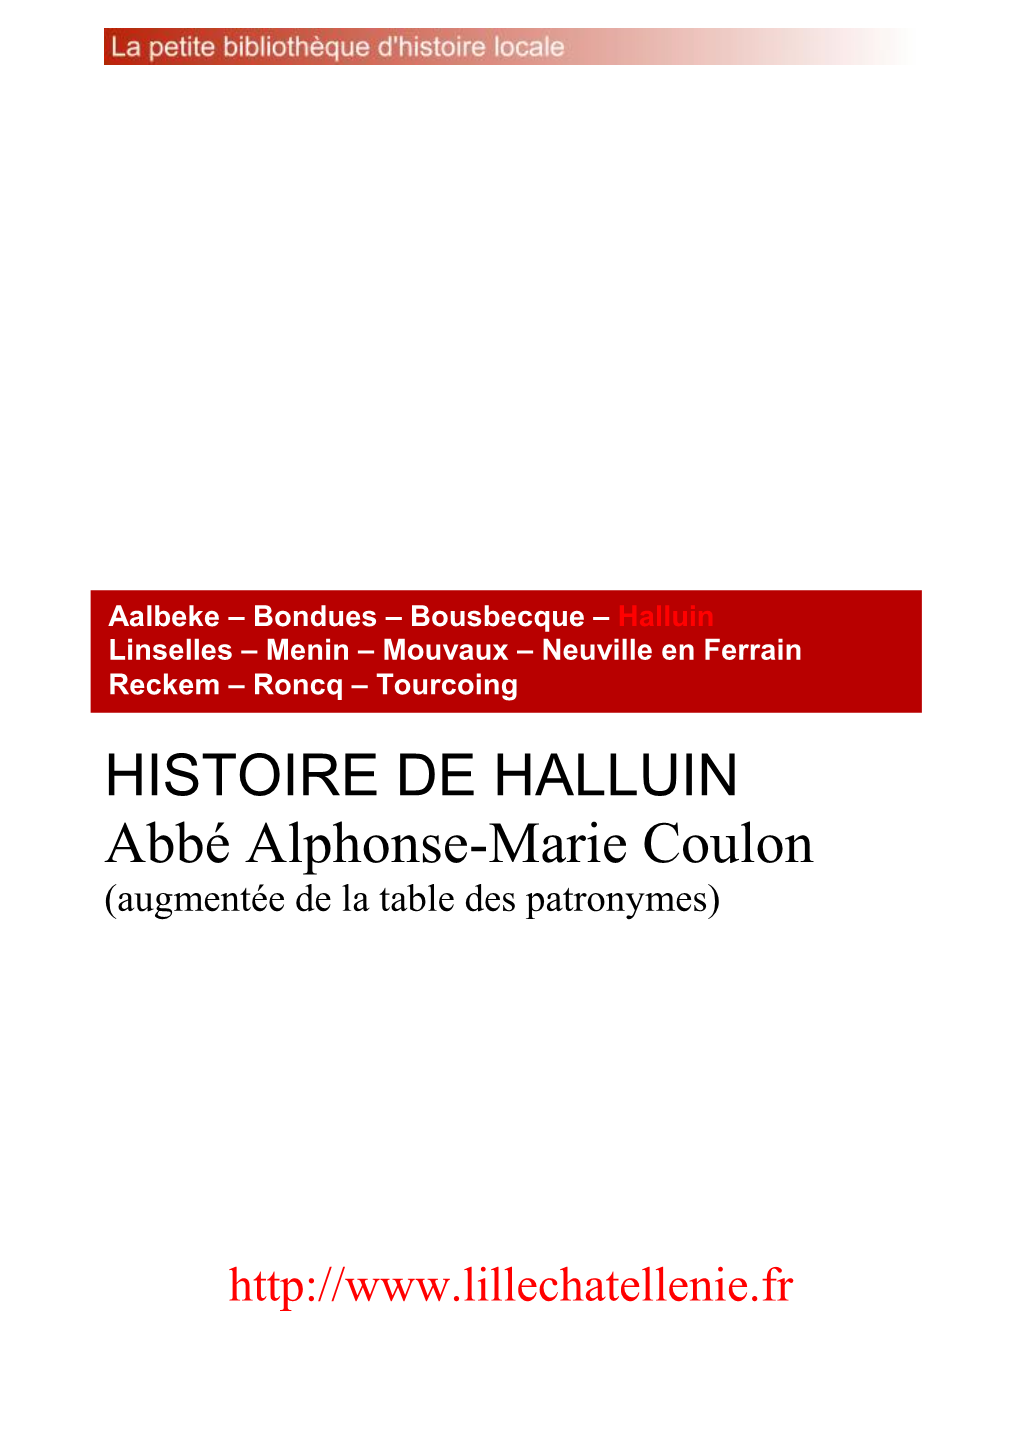 HISTOIRE DE HALLUIN Abbé Alphonse-Marie Coulon (Augmentée De La Table Des Patronymes)